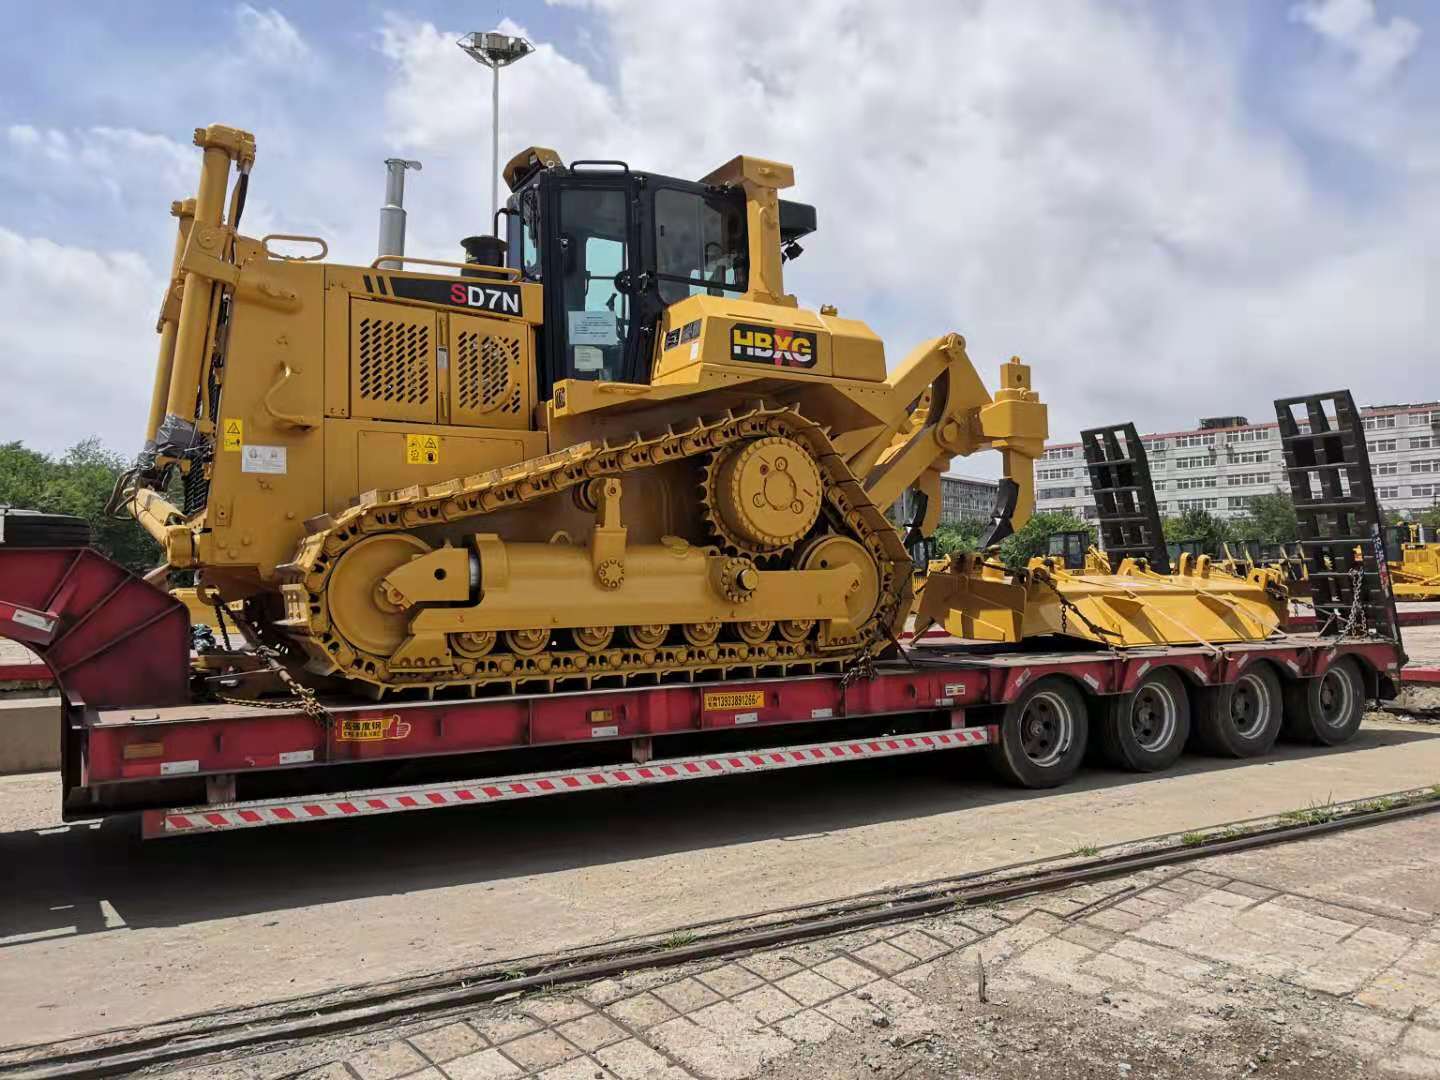 Il bulldozer SD7N ordinato dal cliente ghanese viene consegnato senza intoppi